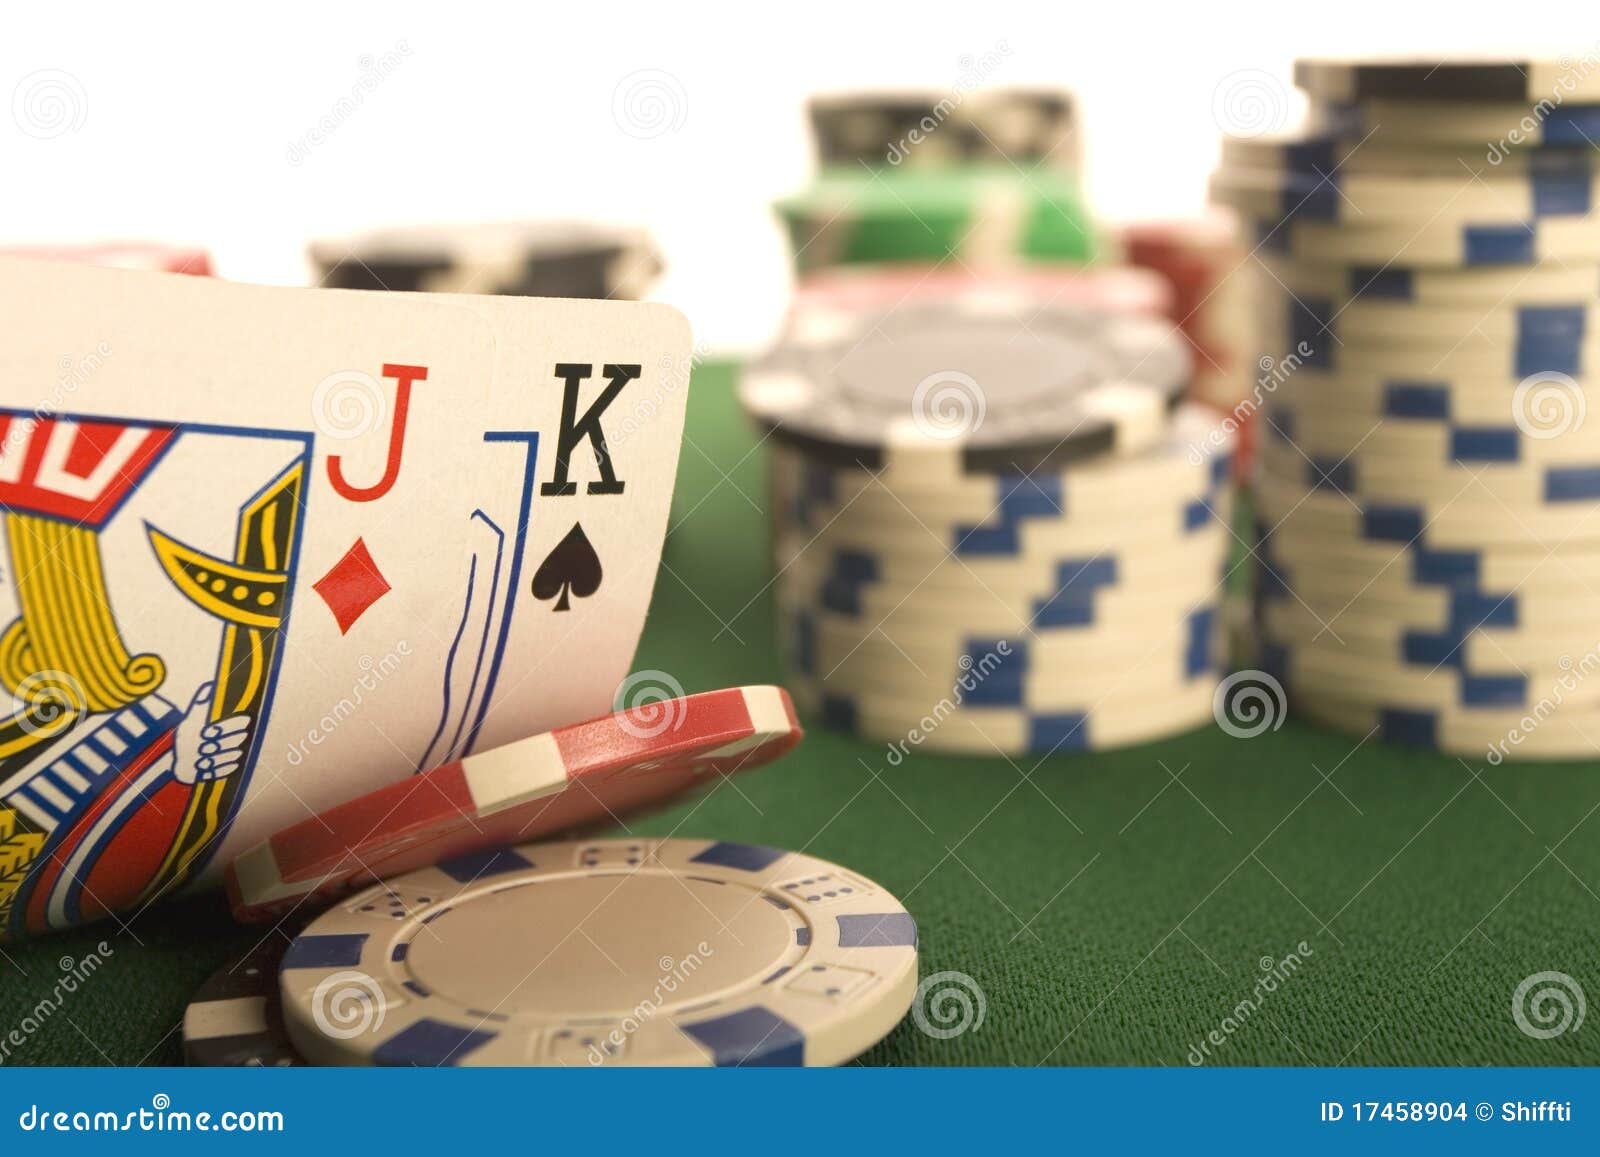 poker p